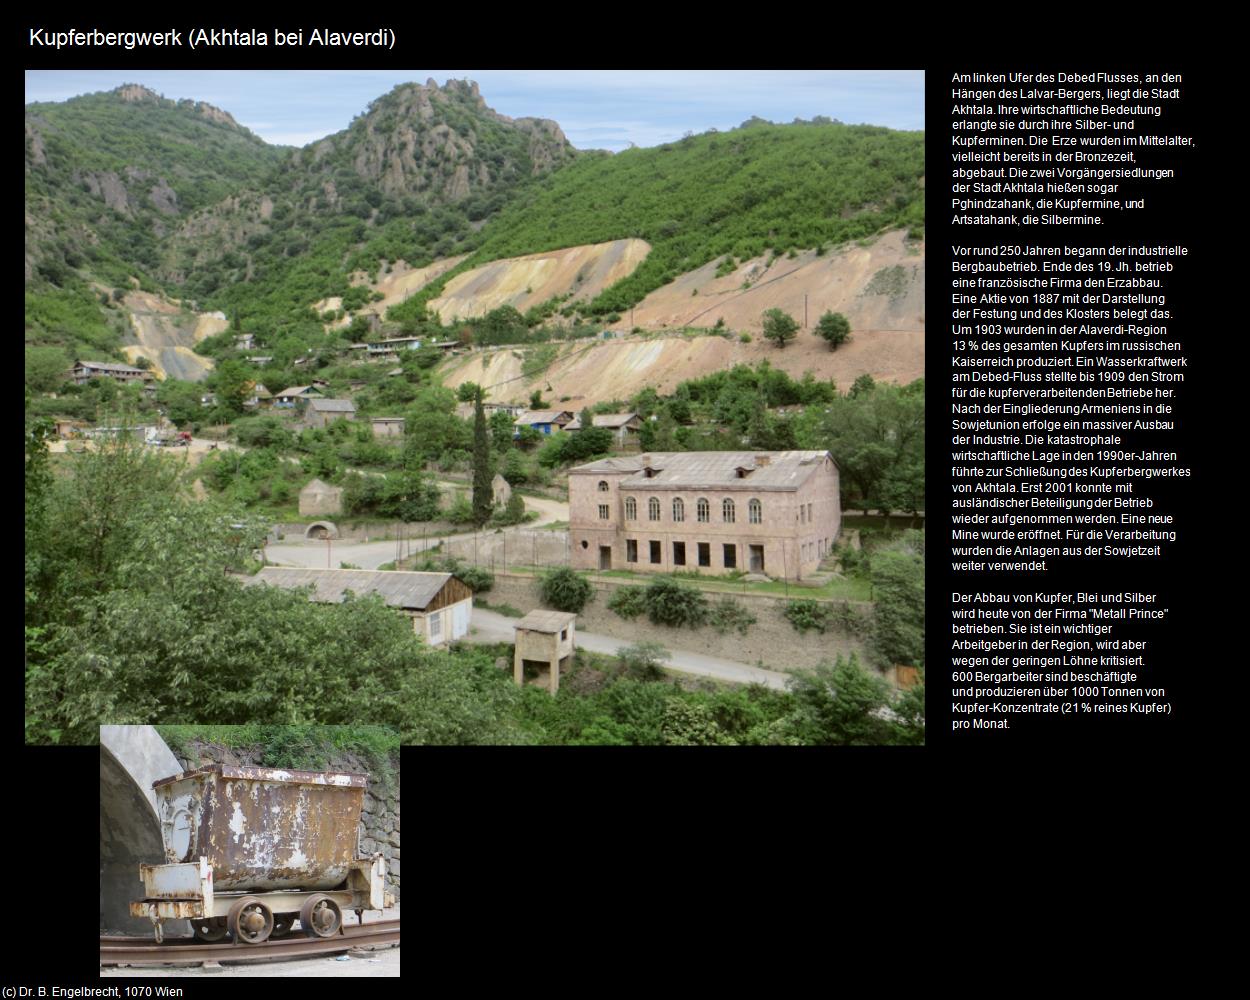 Kupferbergwerk (Akhtala bei Alaverdi) in Kulturatlas-ARMENIEN